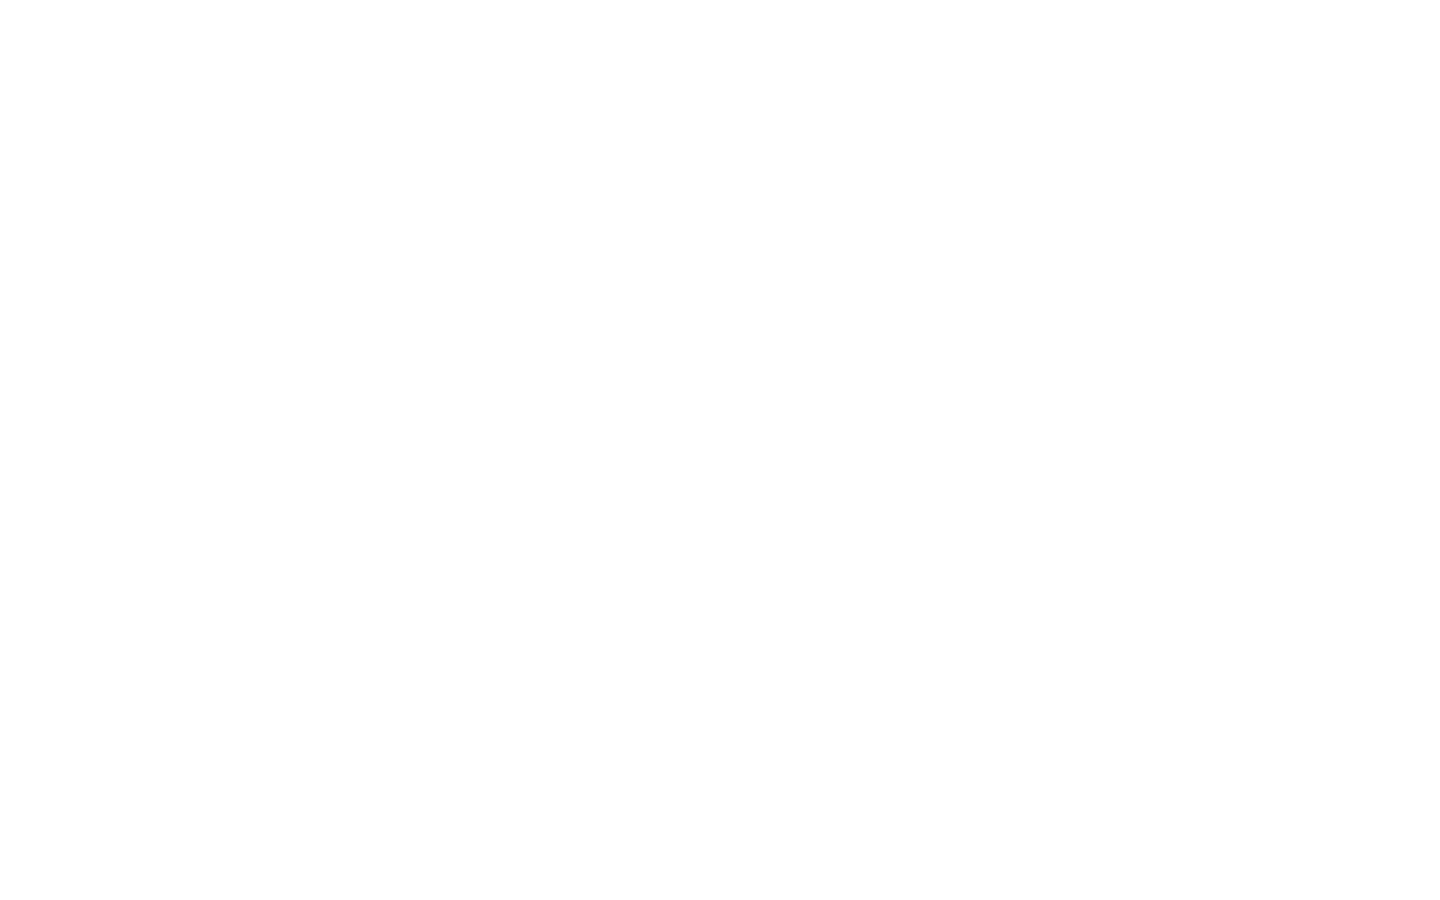 Biomarin logo